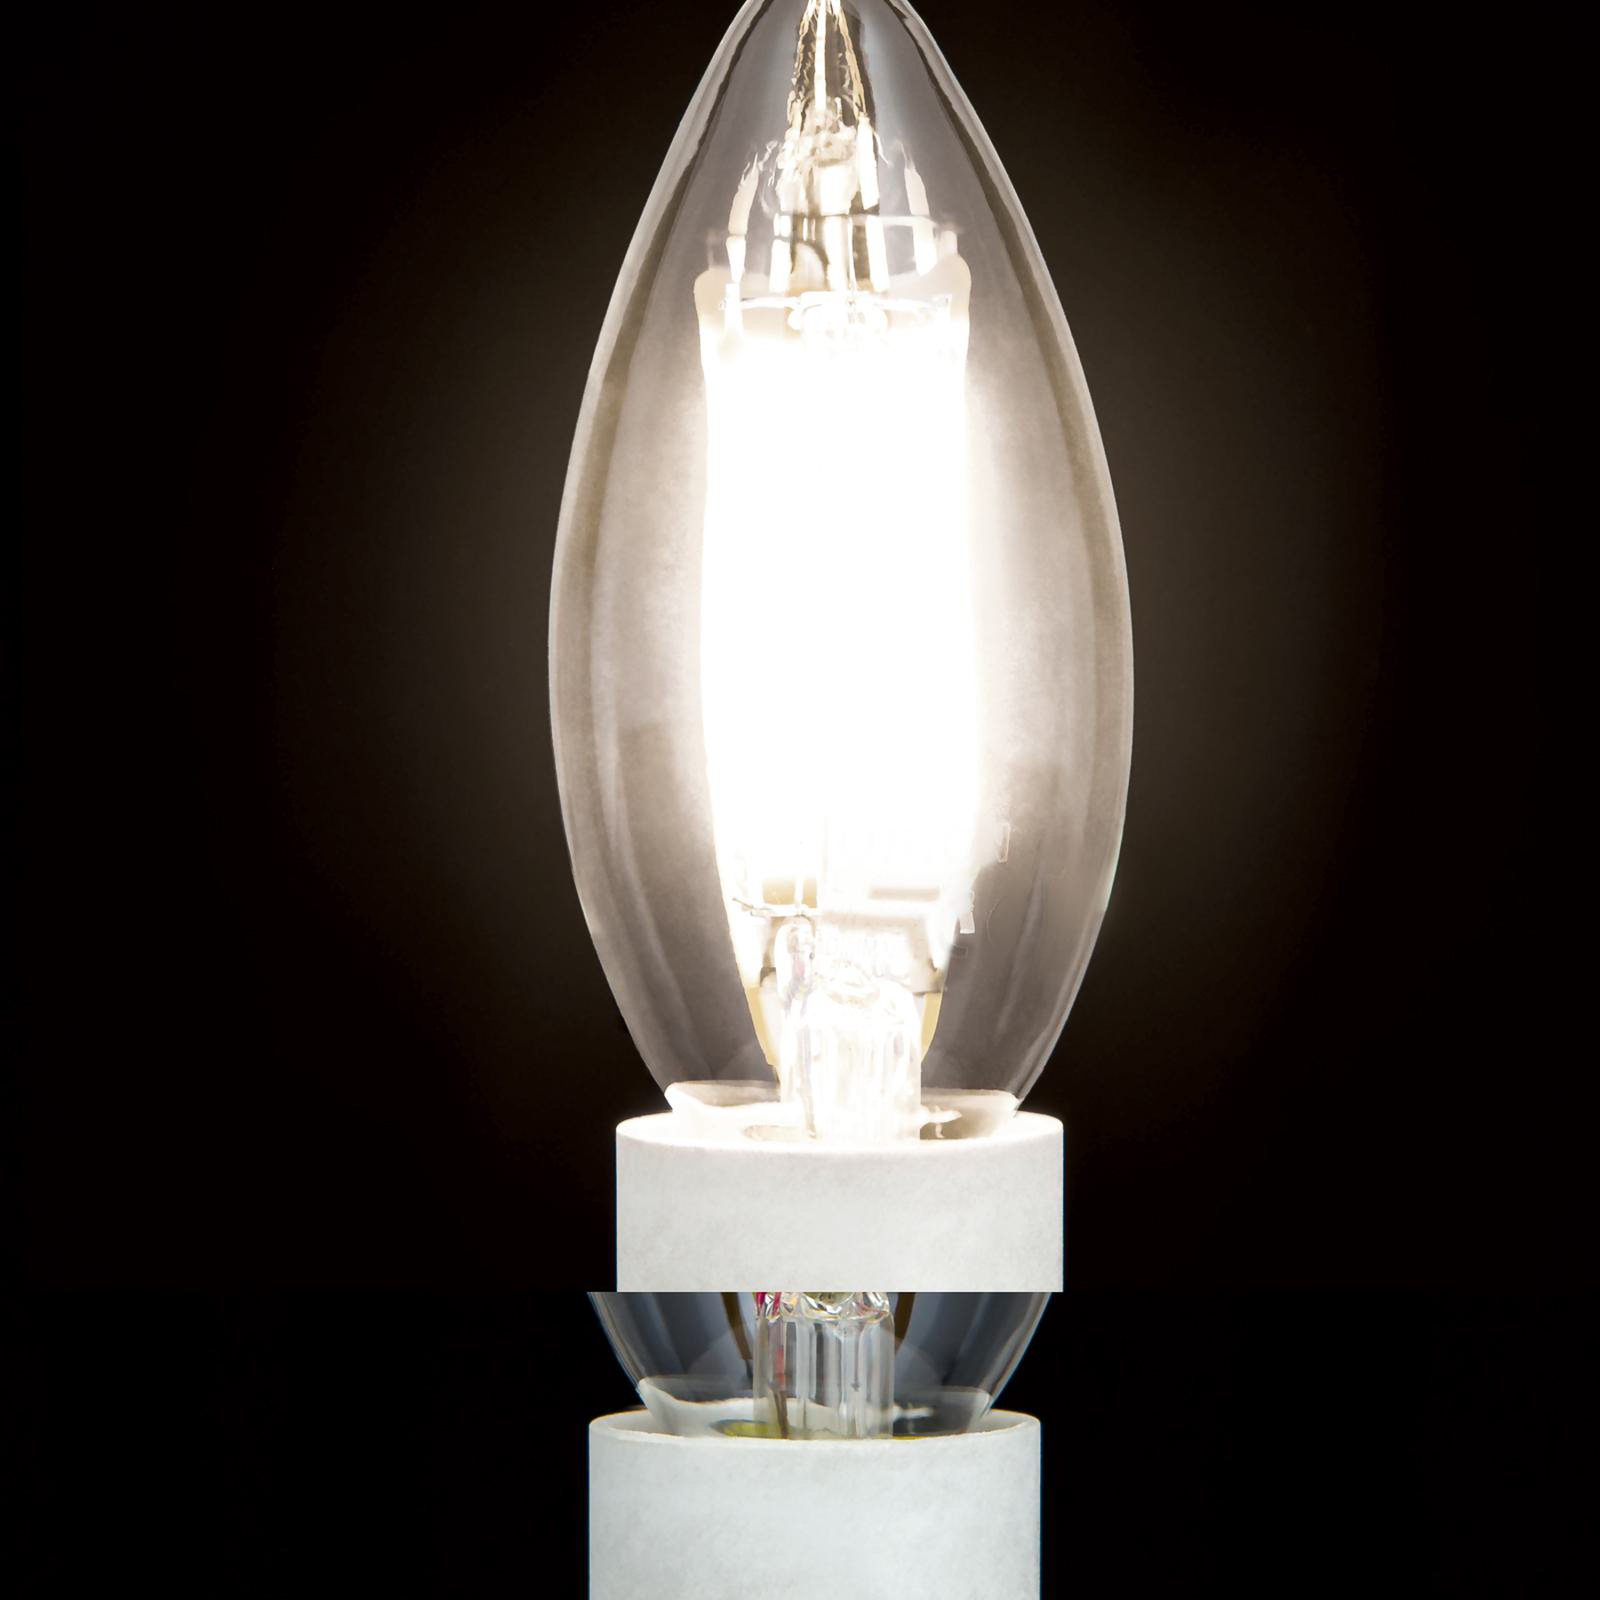 LED filament lamp E14 C35 helder 6W 827 720lm dimbaar